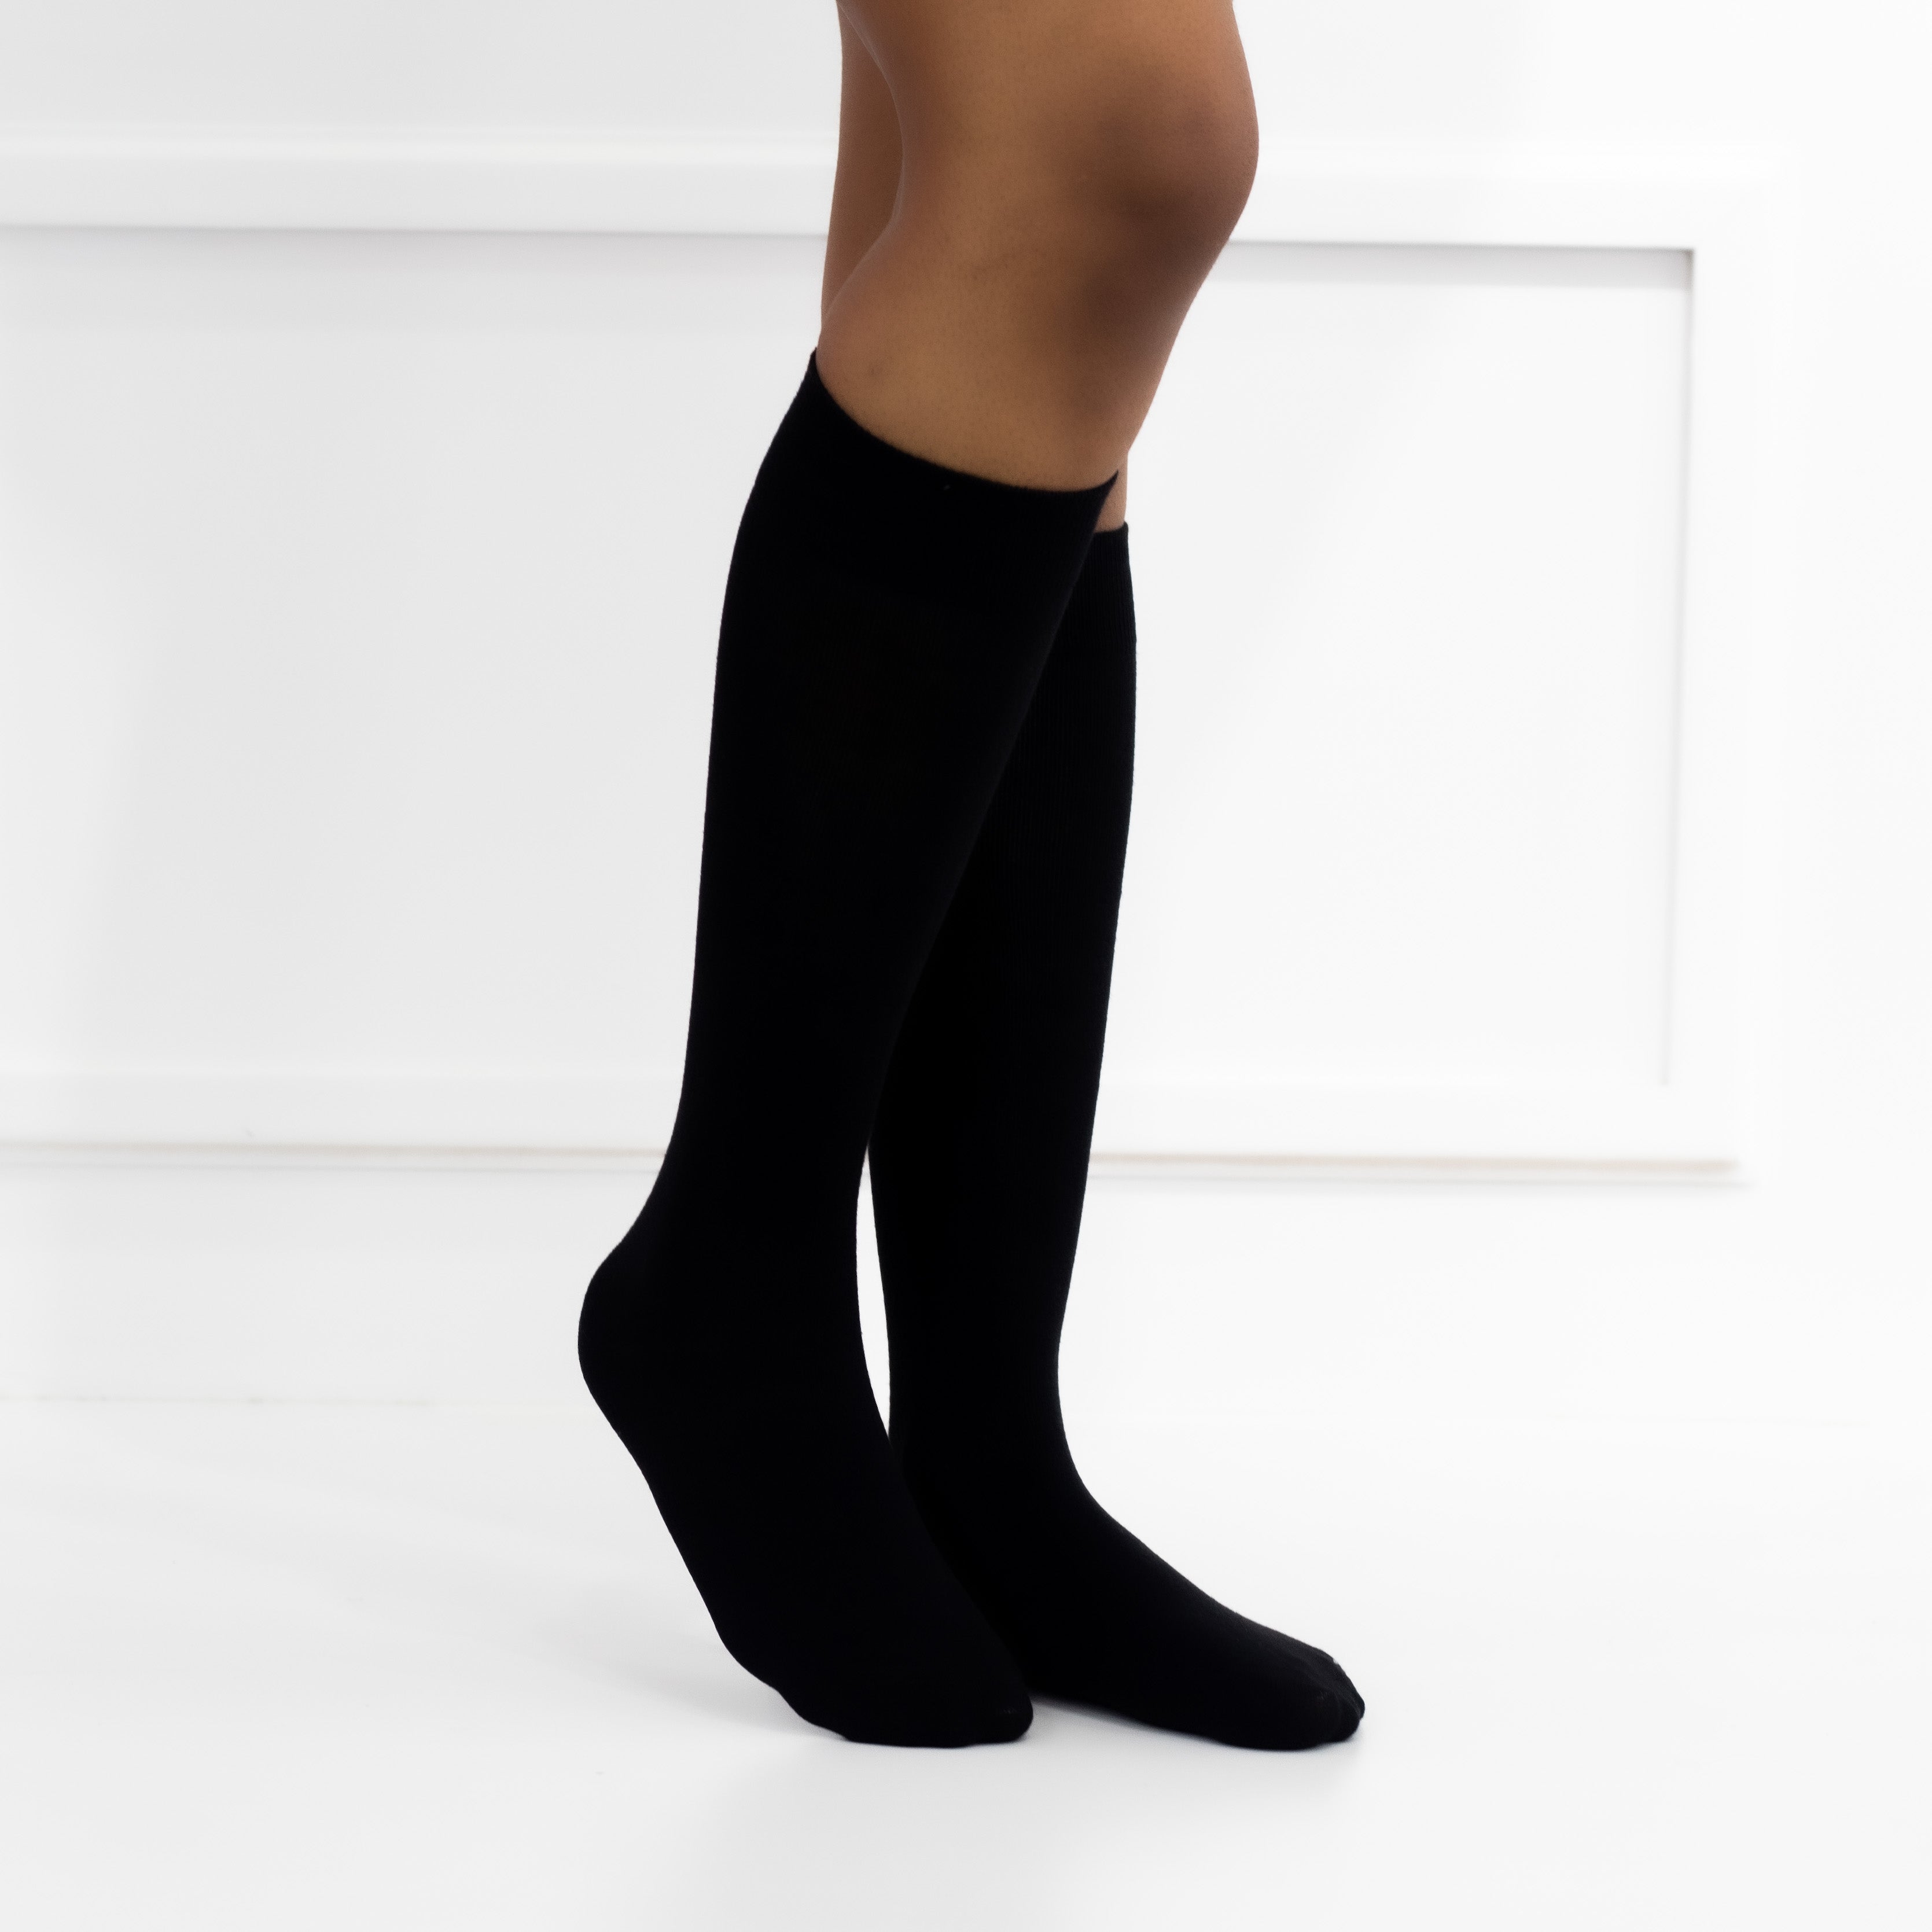 Black ladies knitted socks mia